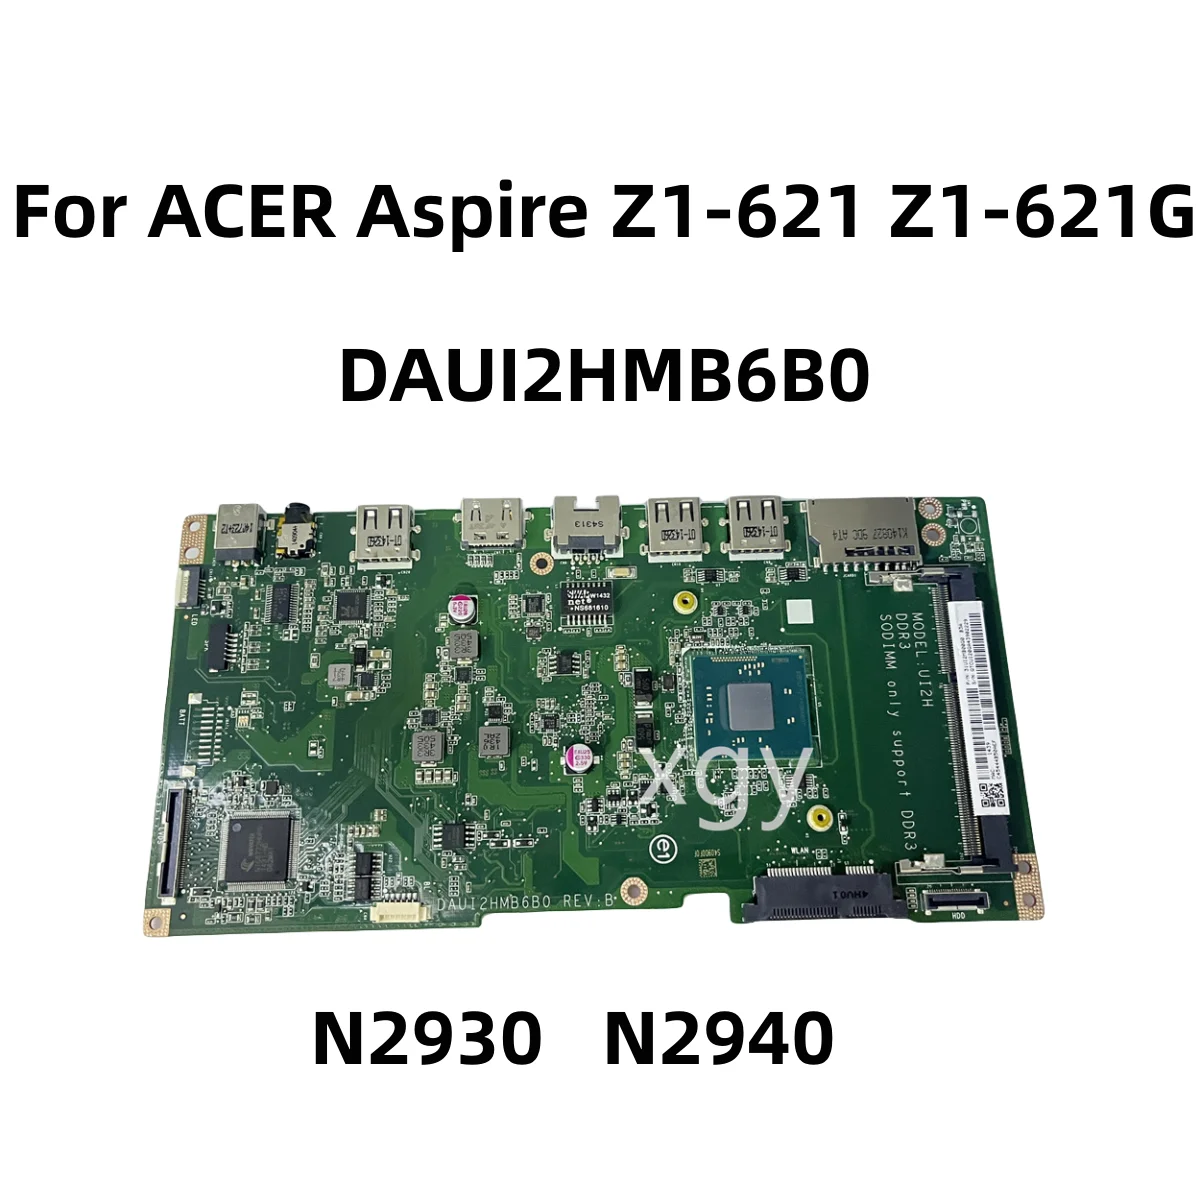 

Оригинальная материнская плата для ноутбука ACER Aspire Z1-621 все-в-одном N2930 N2940 DAUI2HMB6B0 100%, отличное тестирование